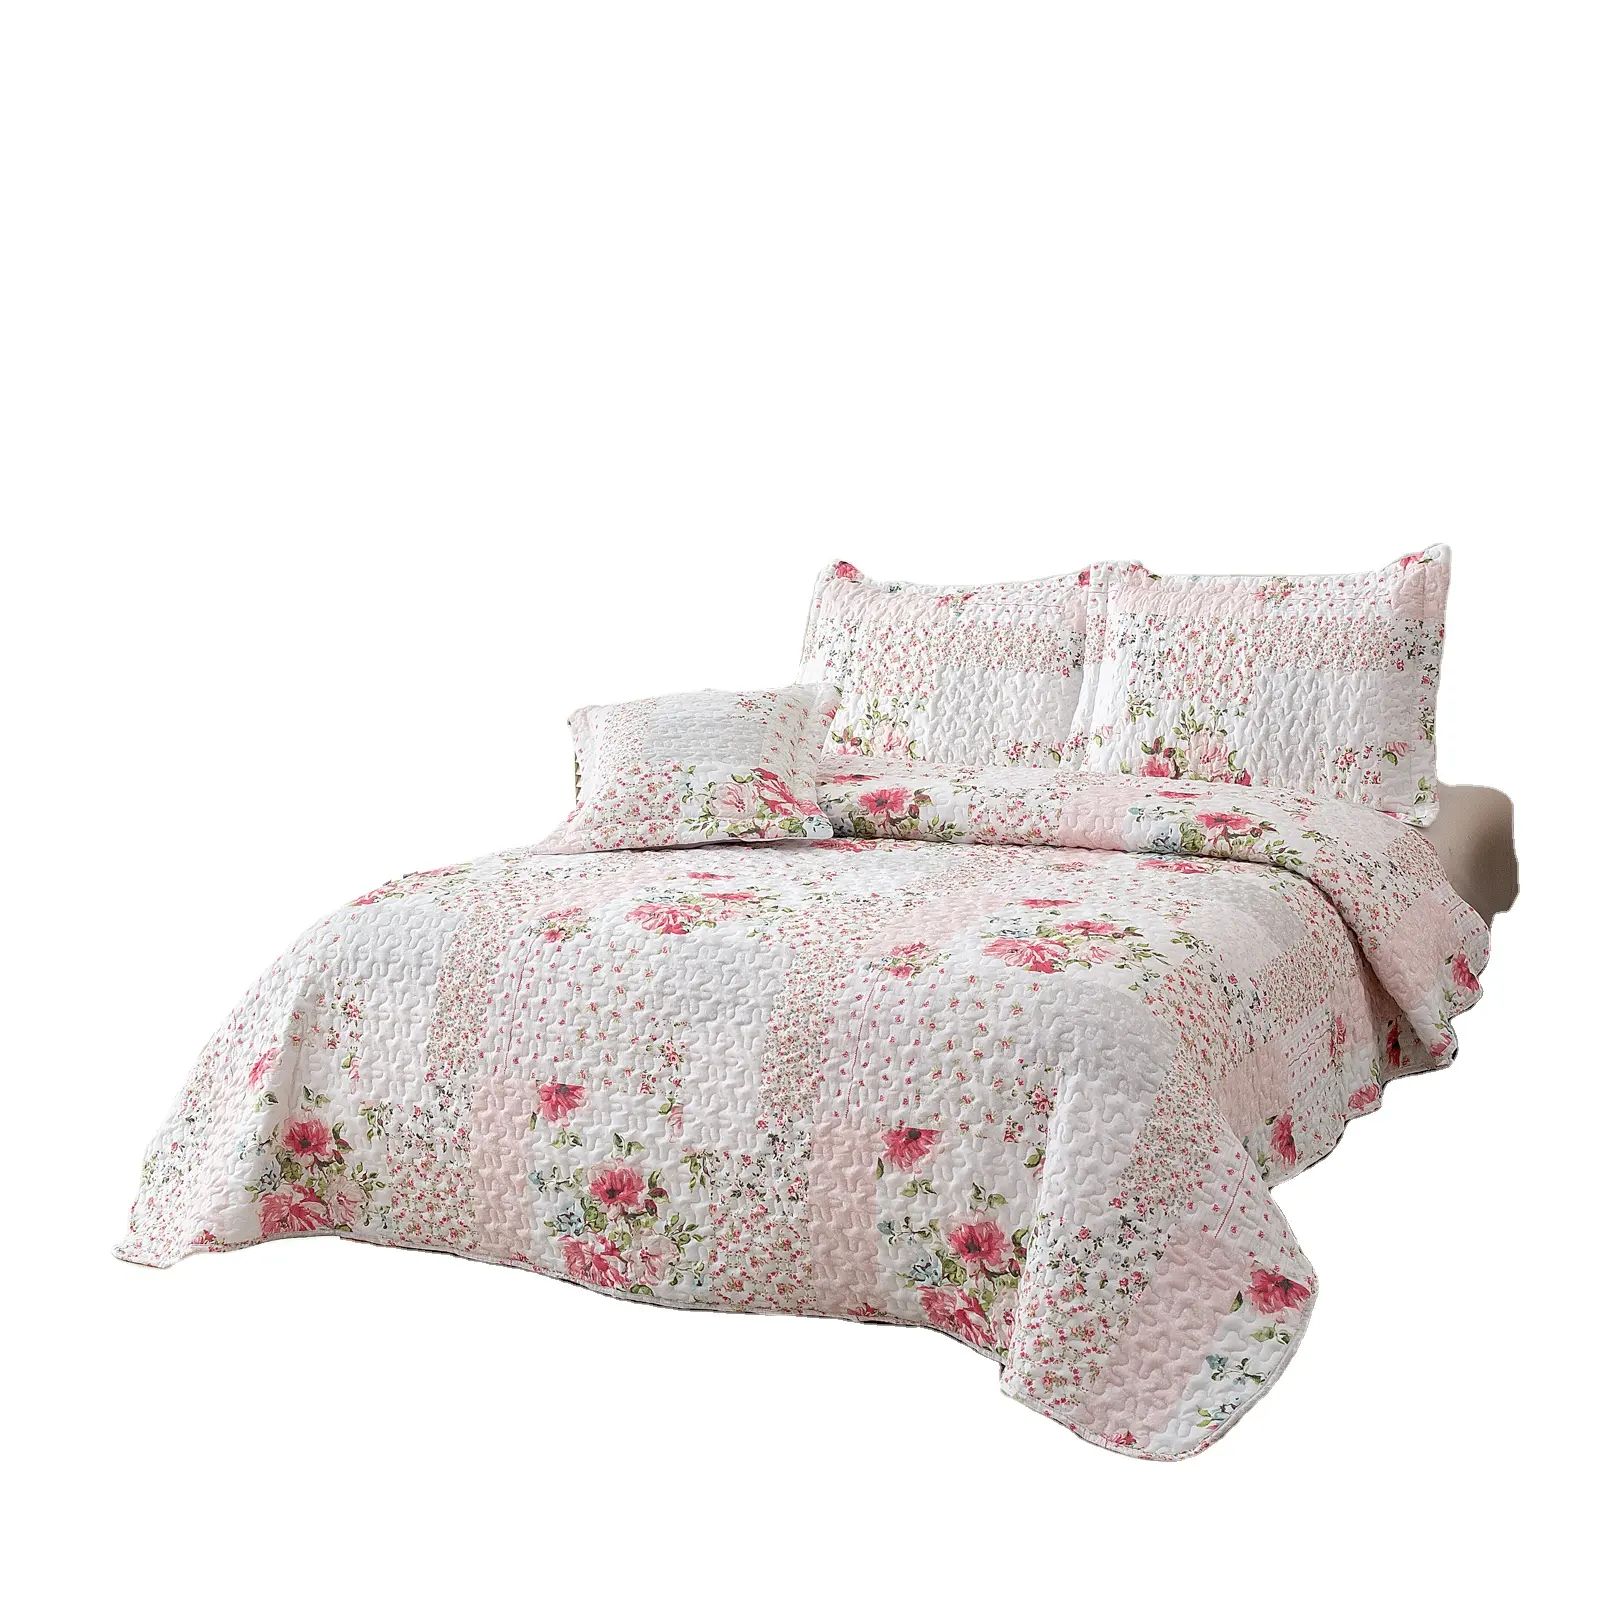 Seprai rumah nyaman tekstil set bedcover dicuci microfiber seprai musim semi set penutup tempat tidur